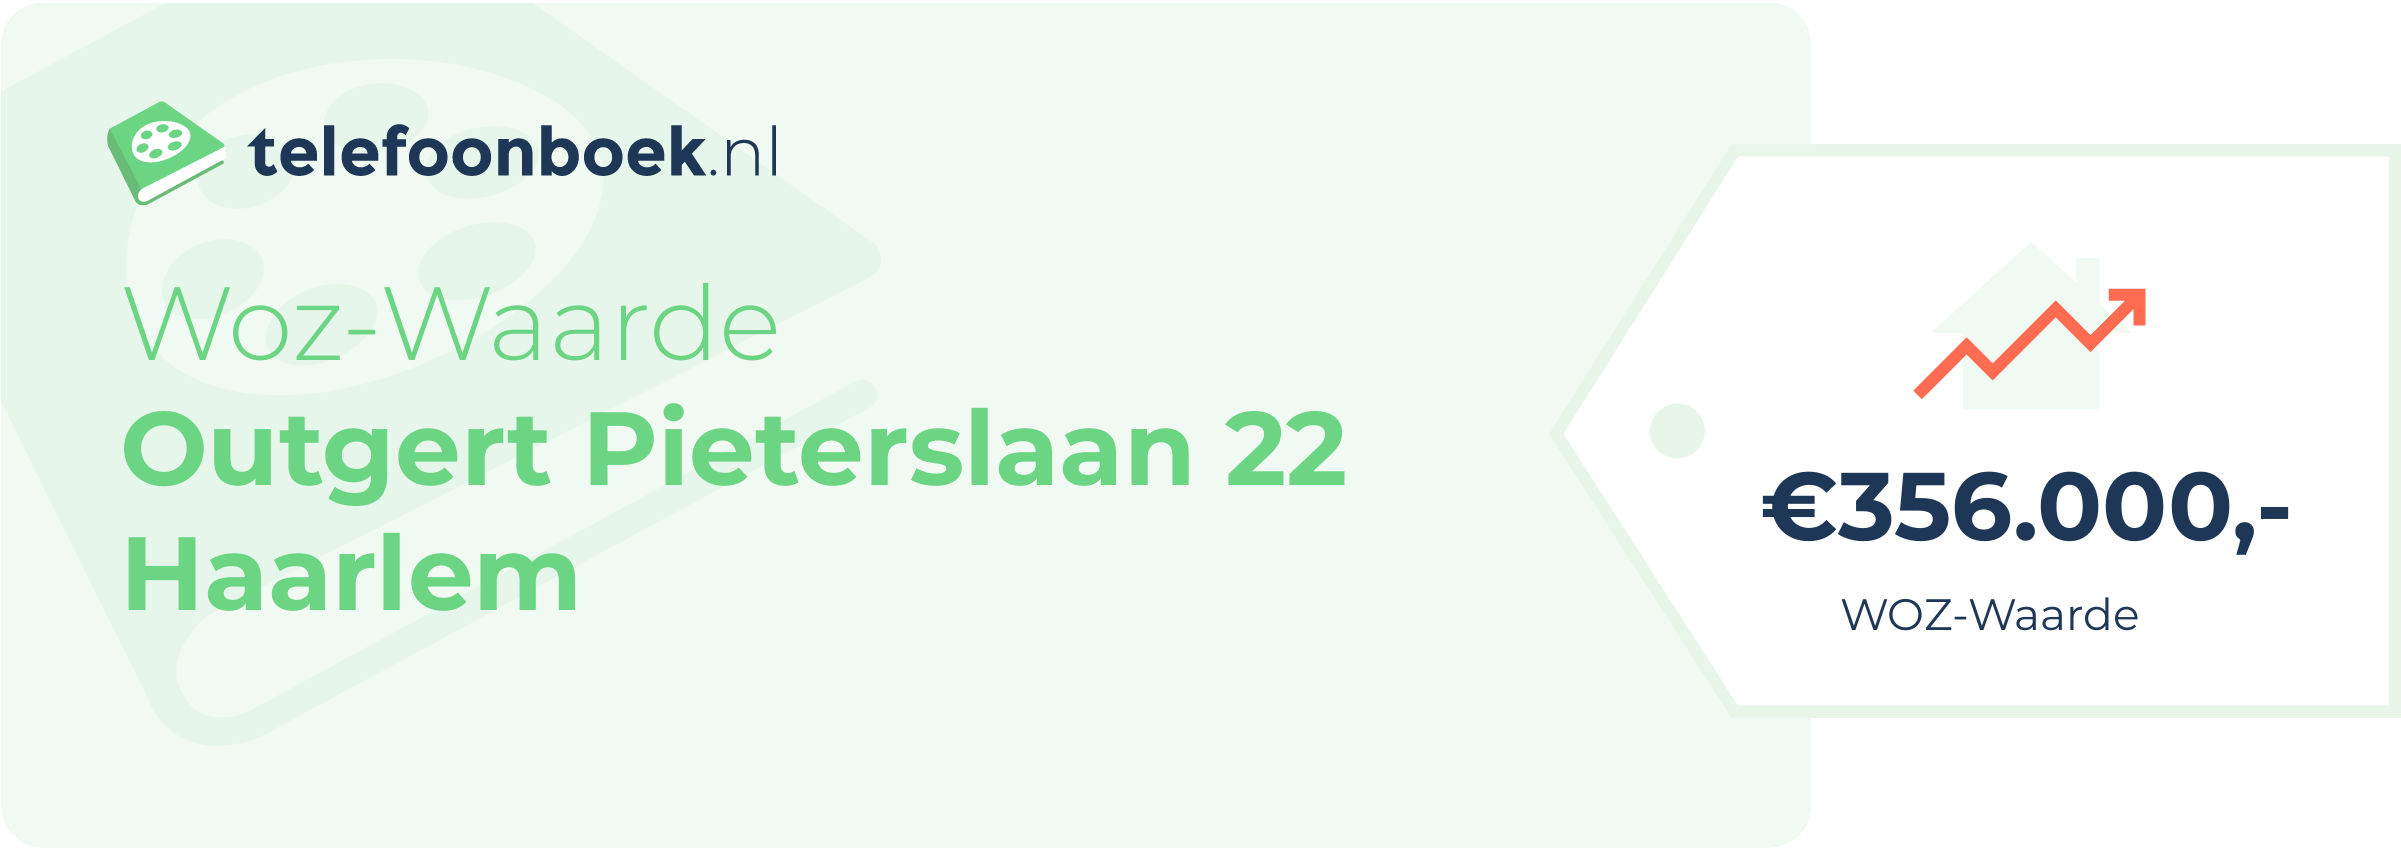 WOZ-waarde Outgert Pieterslaan 22 Haarlem